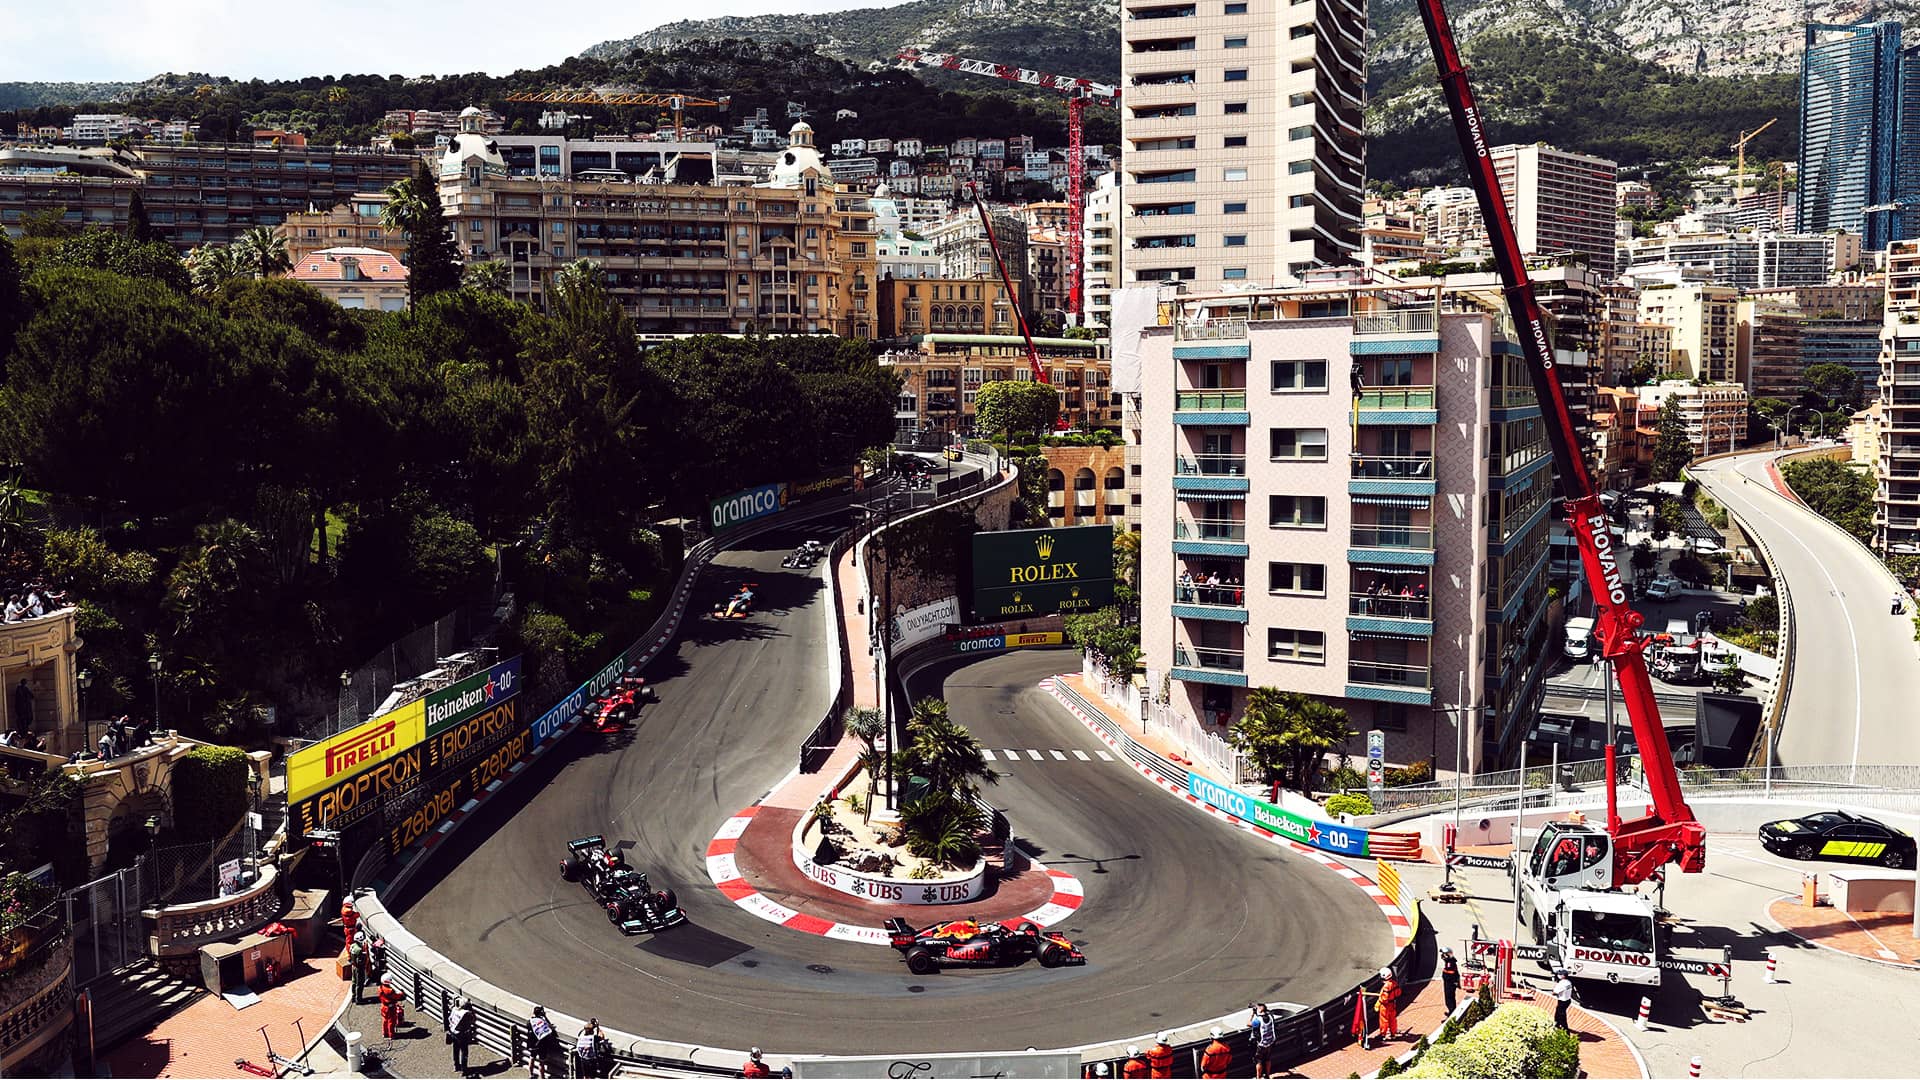 Le circuit de Monaco a très peu changé au fil des années, et est une particularité du Championnat du monde de F1.